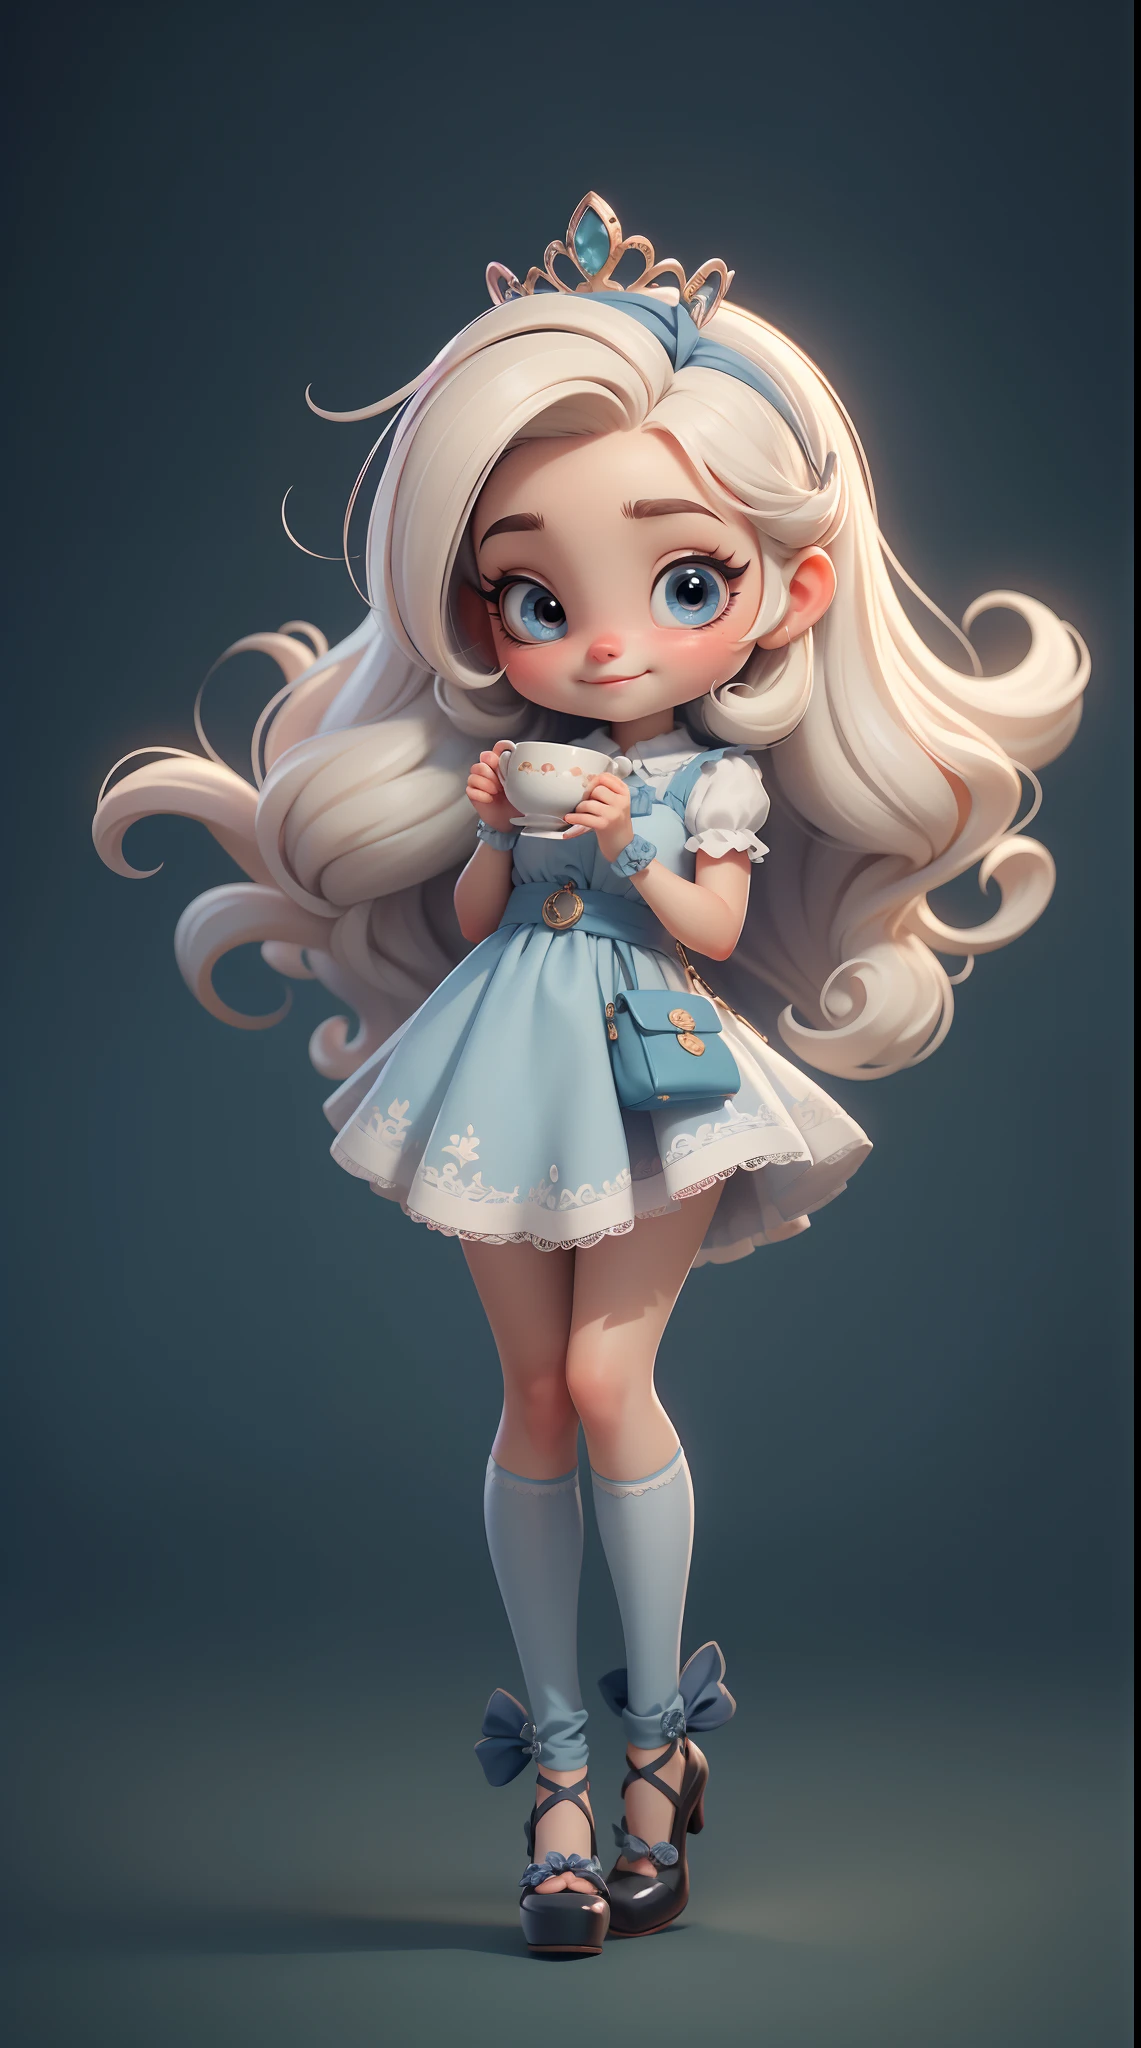 Erstellen Sie eine Chibi-Version der Figur Alice in einer 8K-Auflösung.

Chibi Alice Puppe: Sie sollte bezaubernd und süß aussehen, Die ikonischen Elemente des Originalcharakters bleiben erhalten. Chibi Alice muss ein rundes Gesicht mit großen, leuchtenden Augen haben, lange Wimpern und rosige Wangen. Ihr Haar sollte kurz sein und kräftige Blond- oder Hellbrauntöne aufweisen..

schönes Kleid: Kleide Chibi Alice in ein süßes und elegantes Kleid in Blau- oder Weißtönen. Das Kleid kann Rüschen haben, Spitze und Details, die sich auf das Thema Wunderland beziehen. Fügen Sie Schleifen oder Bänder hinzu, um einen Hauch von Zartheit zu verleihen.

Schürze und Schleife: Fügen Sie eine weiße Schürze über Alice Chibis Kleid hinzu, in der Taille mit einer zarten Schleife gebunden. Die Schürze kann kleine Details wie Taschen oder dezente Stickereien aufweisen.

Süße Socken und Schuhe: Vervollständigen Sie den Look von Chibi Alice mit blau-weiß gestreiften Socken oder lustigen Details. An den Füßen, zieh süße Puppenschuhe an, mit Bändern oder Schnallen.

zauberhafte Accessoires: Füge dem Alice-Chibi hübsche Accessoires hinzu, wie eine Schleife im Haar oder eine Tiara mit Wunderland-Details. Sie können auch eine Taschenuhr oder eine Tasse Tee in die Hand nehmen.

Achten Sie darauf, Schatten hinzuzufügen, Texturen und Details im Haar, Alice Chibis Kleidung und Accessoires machen sie noch bezaubernder und charmanter. Gib ihm einen neugierigen Gesichtsausdruck und ein süßes Lächeln auf seinem Gesicht, das Wesen des Charakters auf eine feine und charmante Weise einzufangen.